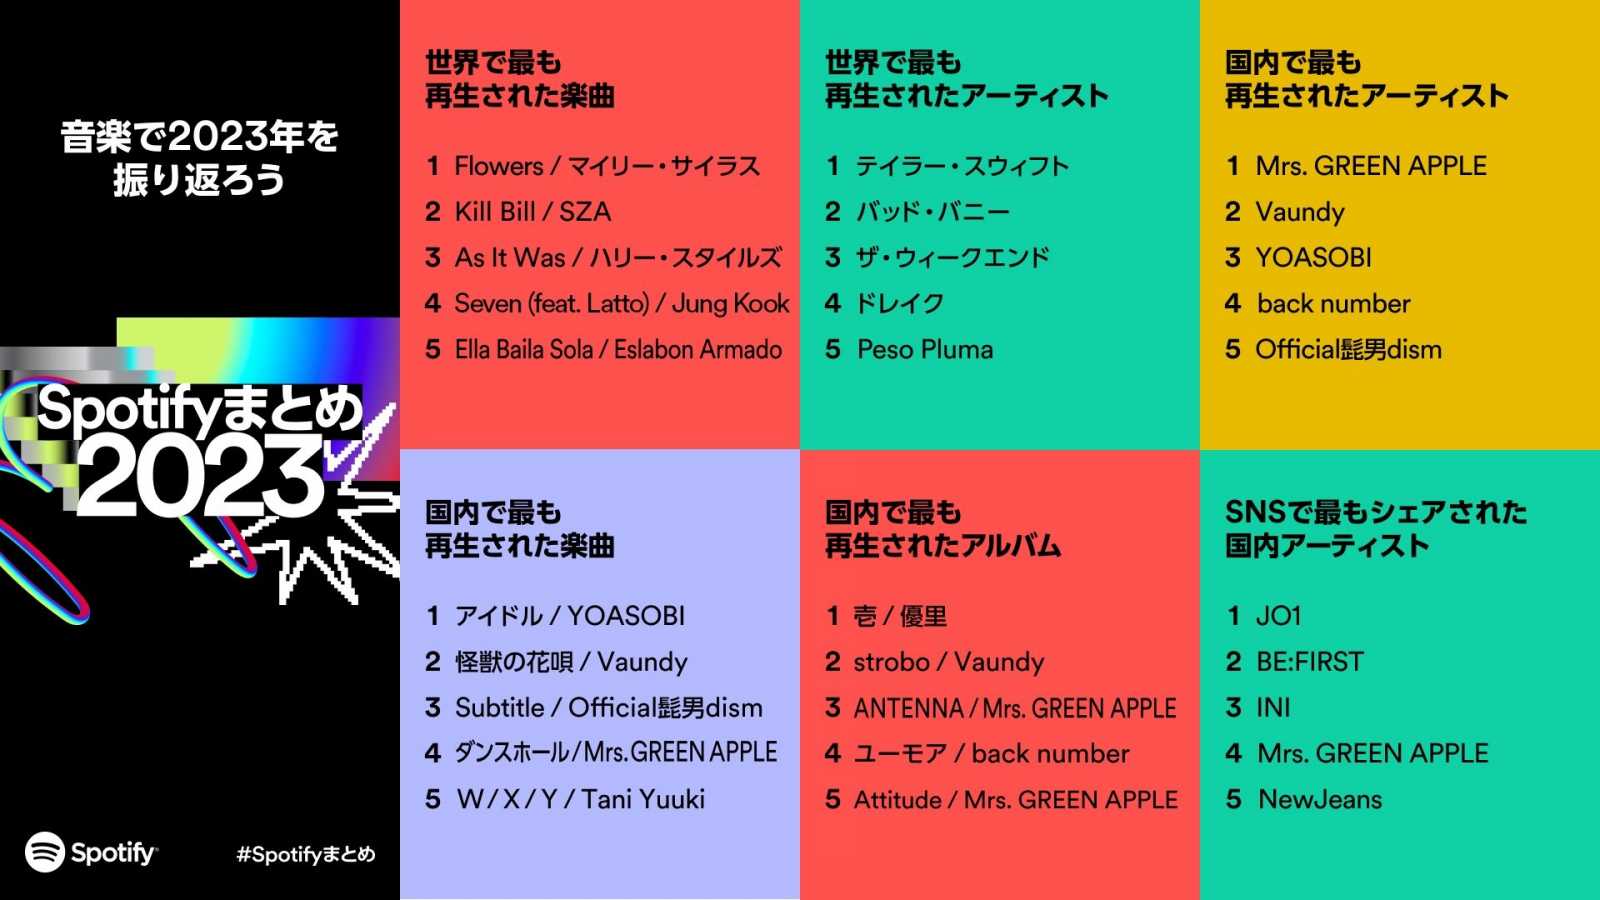 Annonce des artistes japonais les plus écoutés sur Spotify en 2023 © Spotify. All rights reserved.